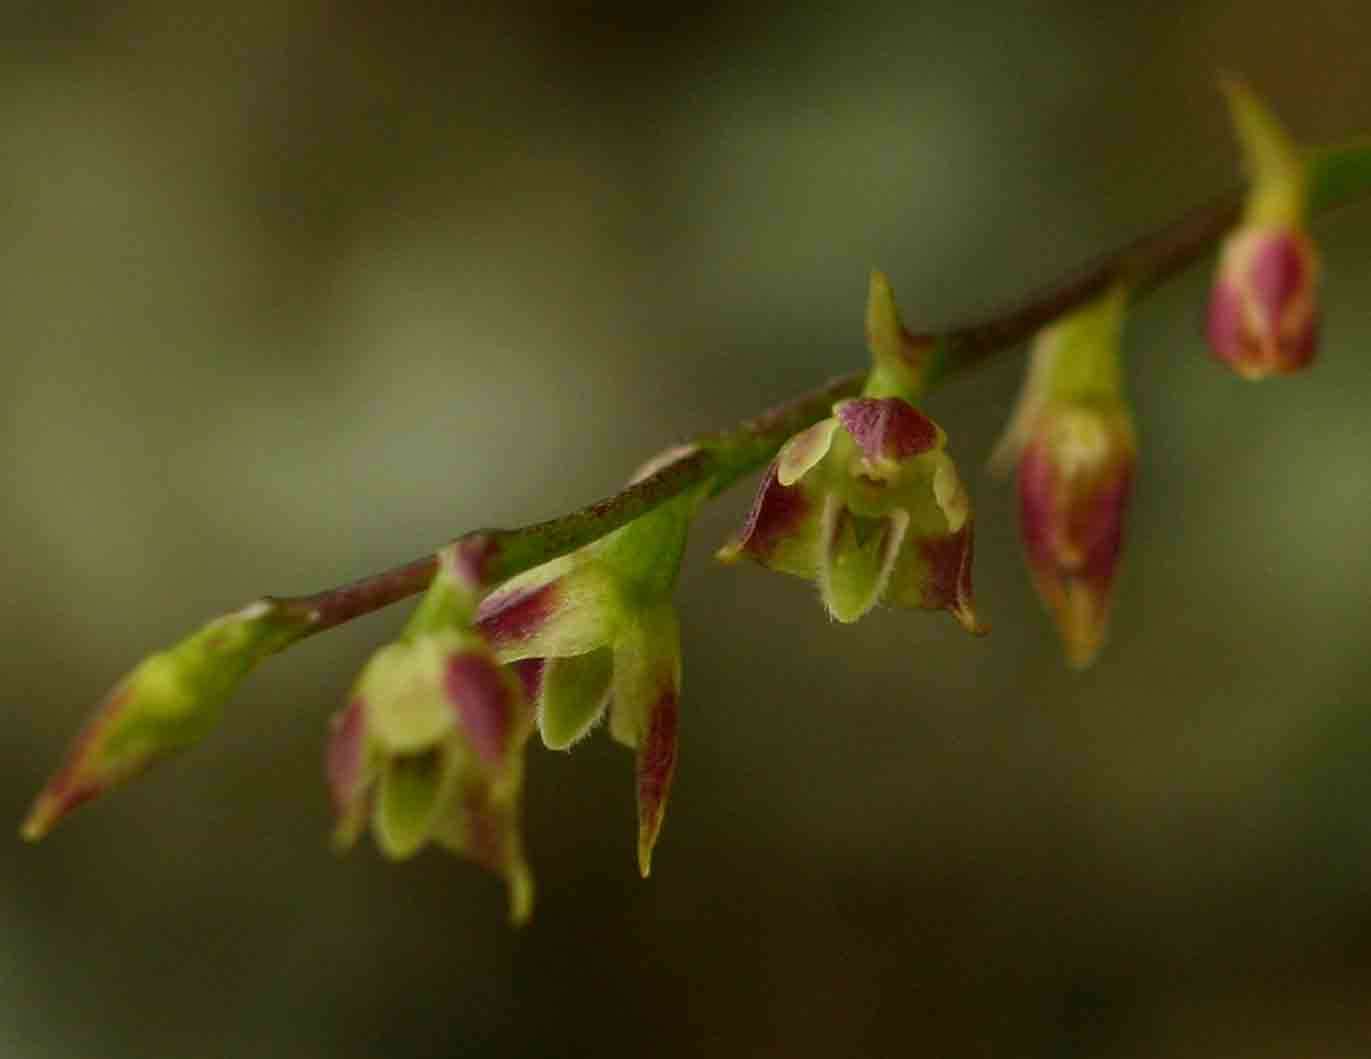 Image of Bulbophyllum intertextum Lindl.